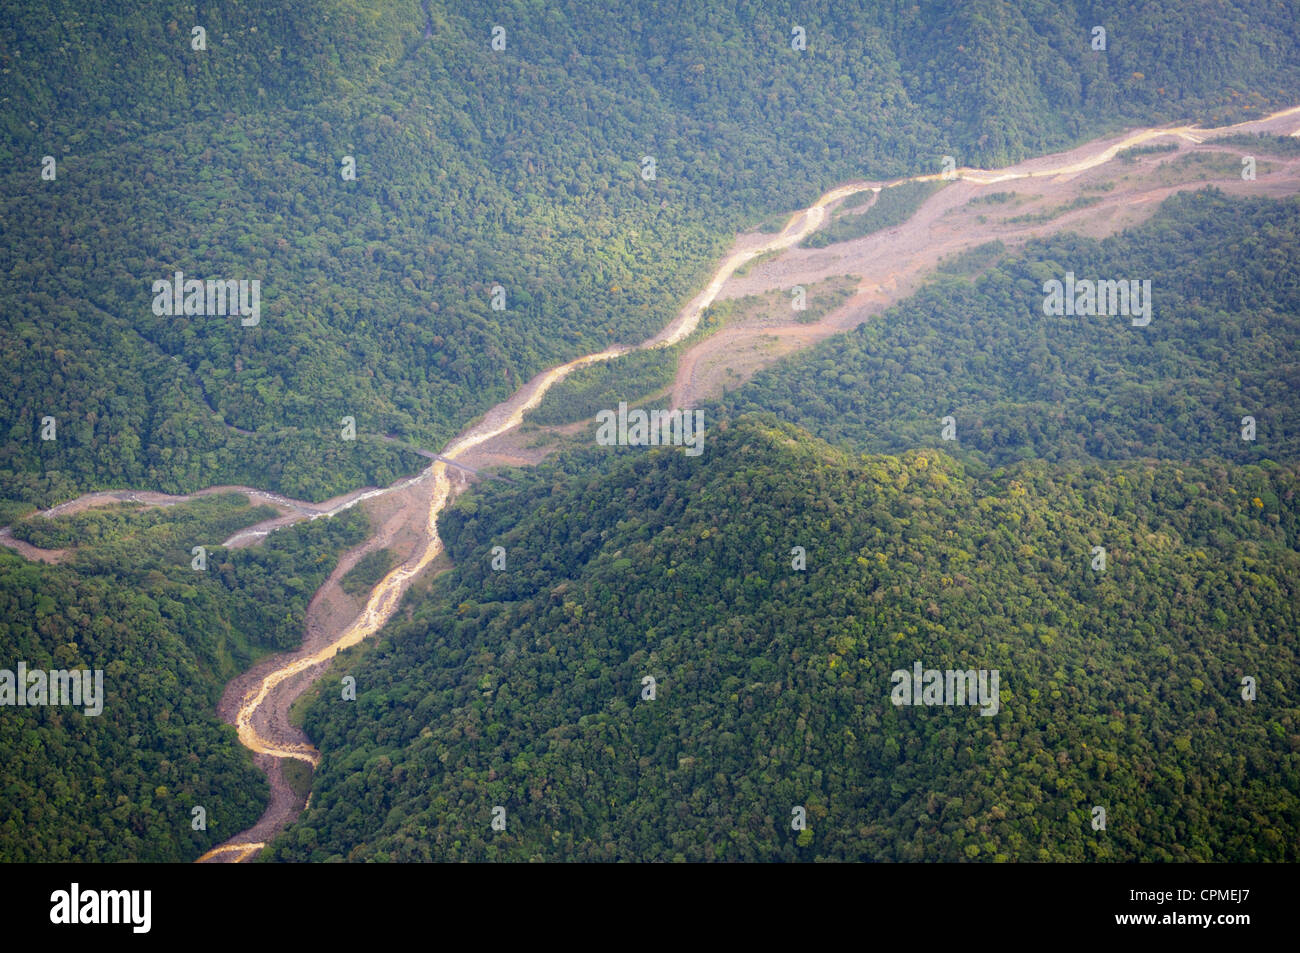 La confluencia del Río Sucio (decolorado minerales volcánicas) y un claro río, Parque Nacional Braulio Carrillo, Costa Rica Foto de stock